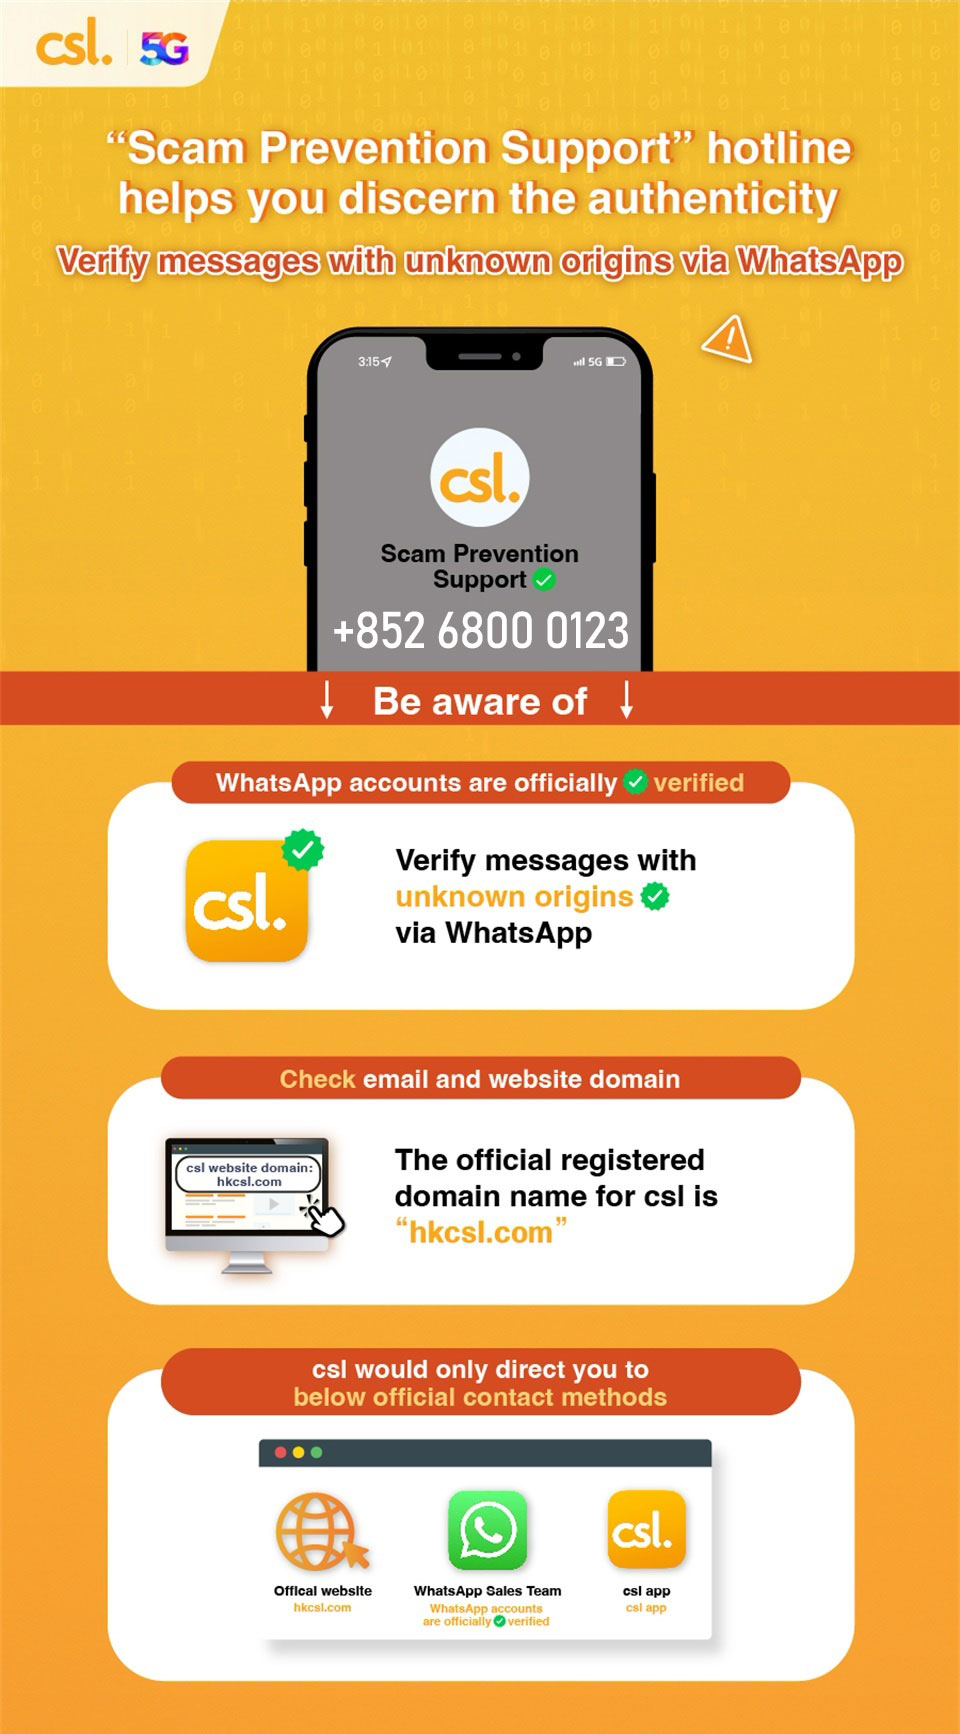 csl Scam Prevention Support WhatsApp 6800 0123